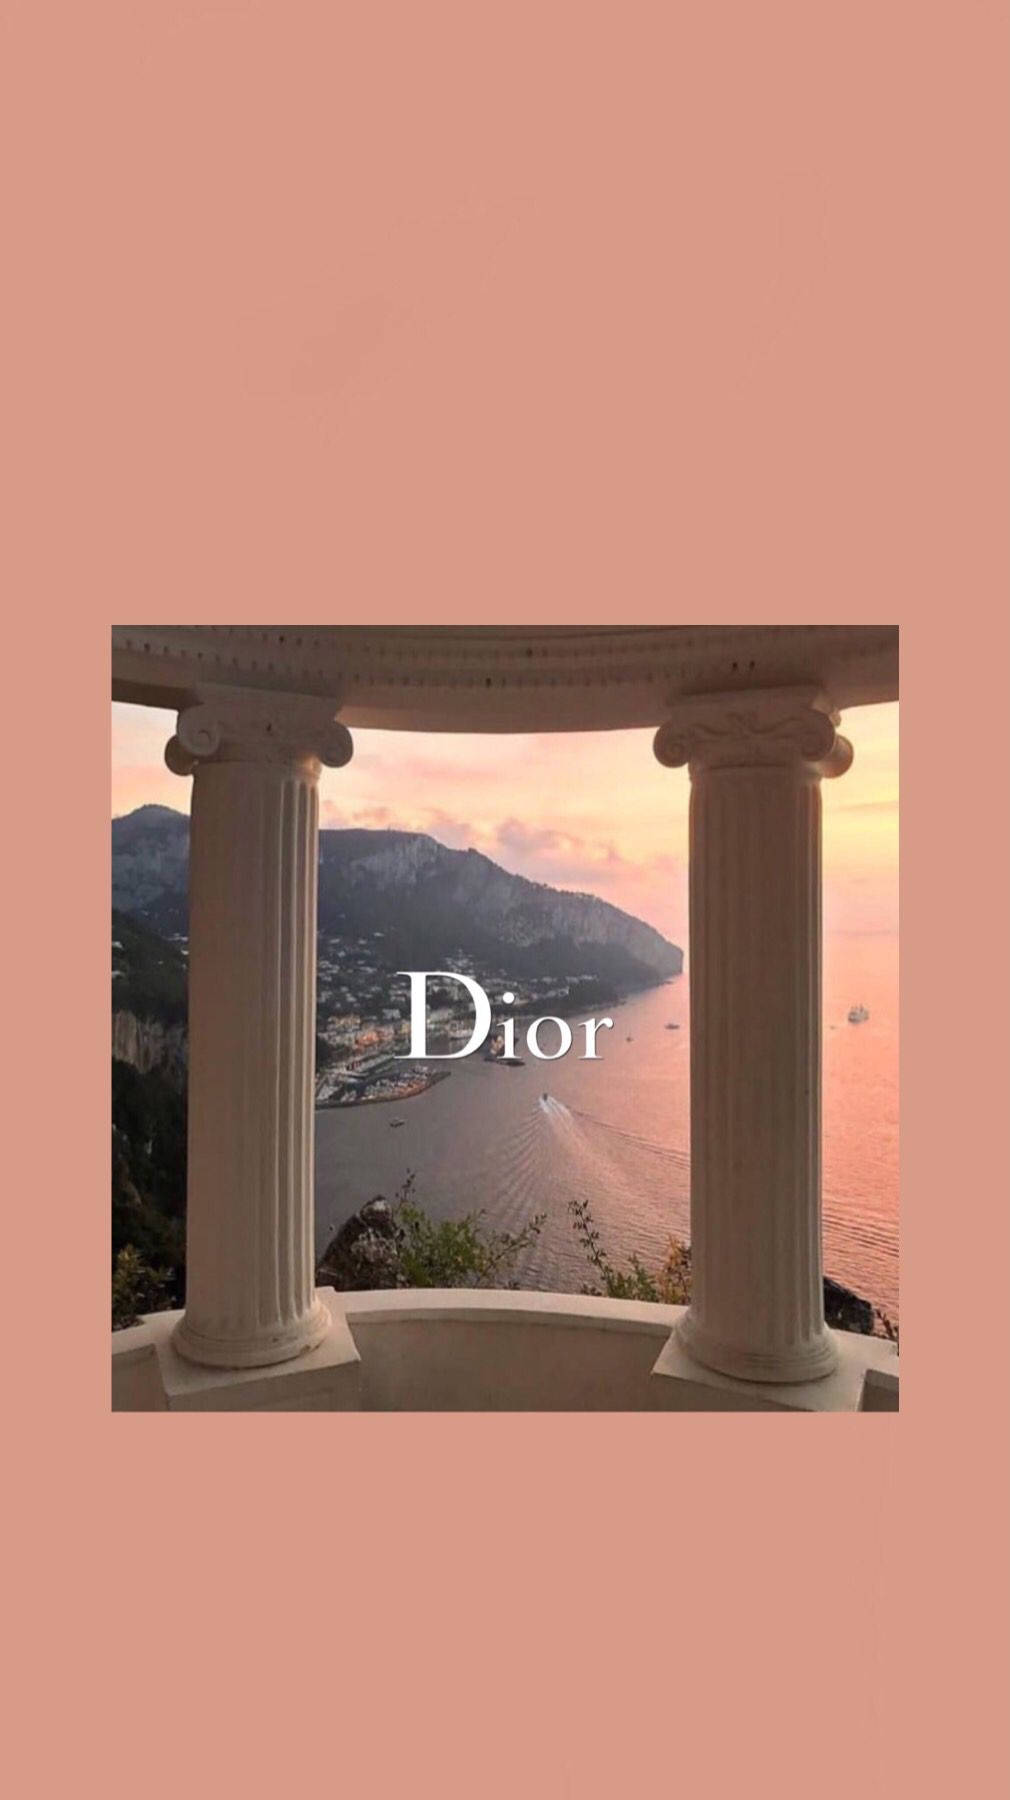 Dior Peach Pillars Wallpaper